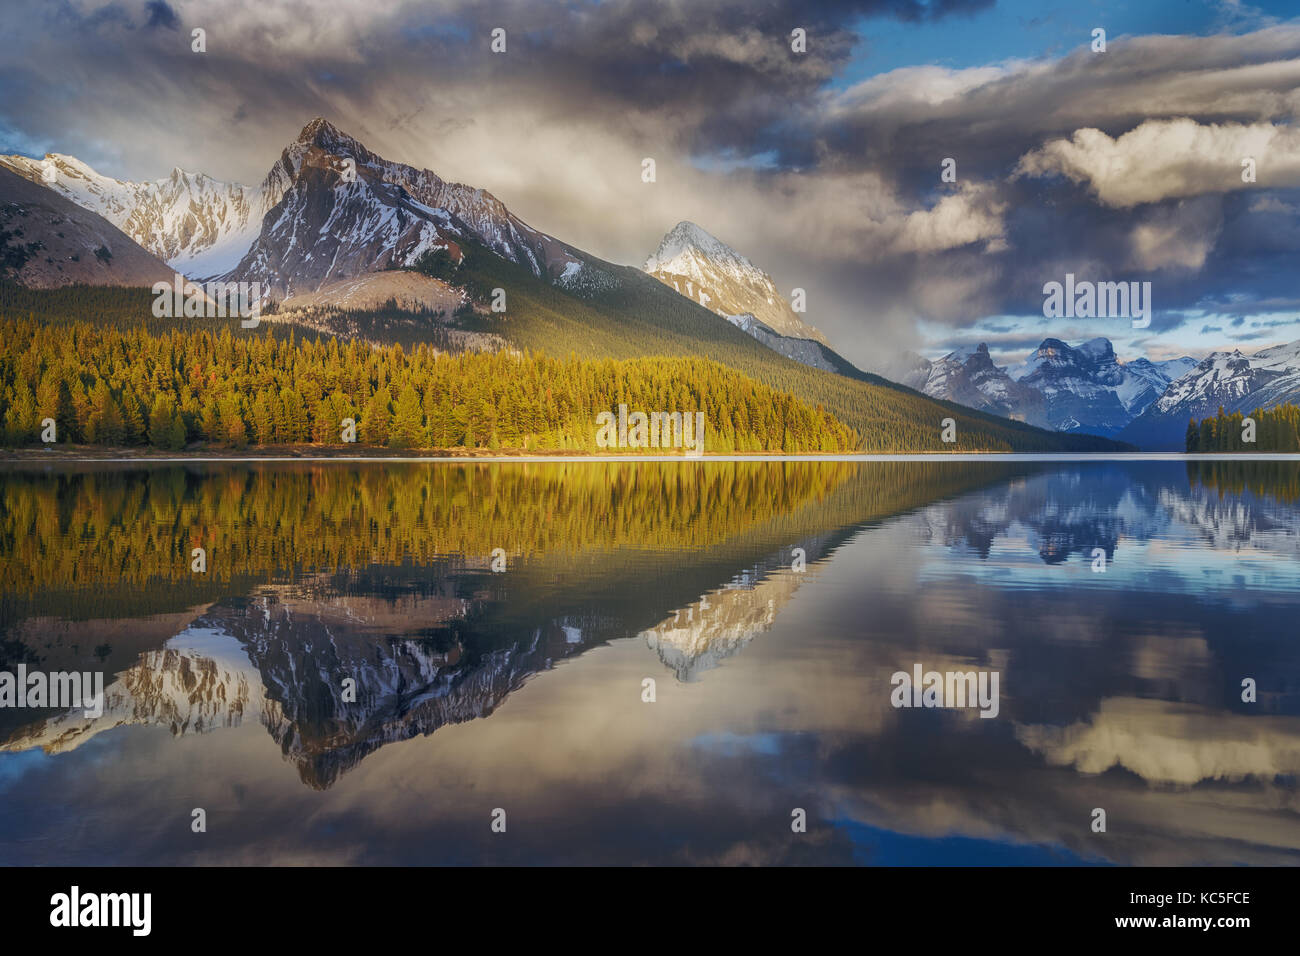 Berg und seine Reflexion Zeichnung als Pfeil in Maligne Lake mit dramatischen bewölkten Himmel. Kanada Landschaft. Spiegelbild. Stockfoto